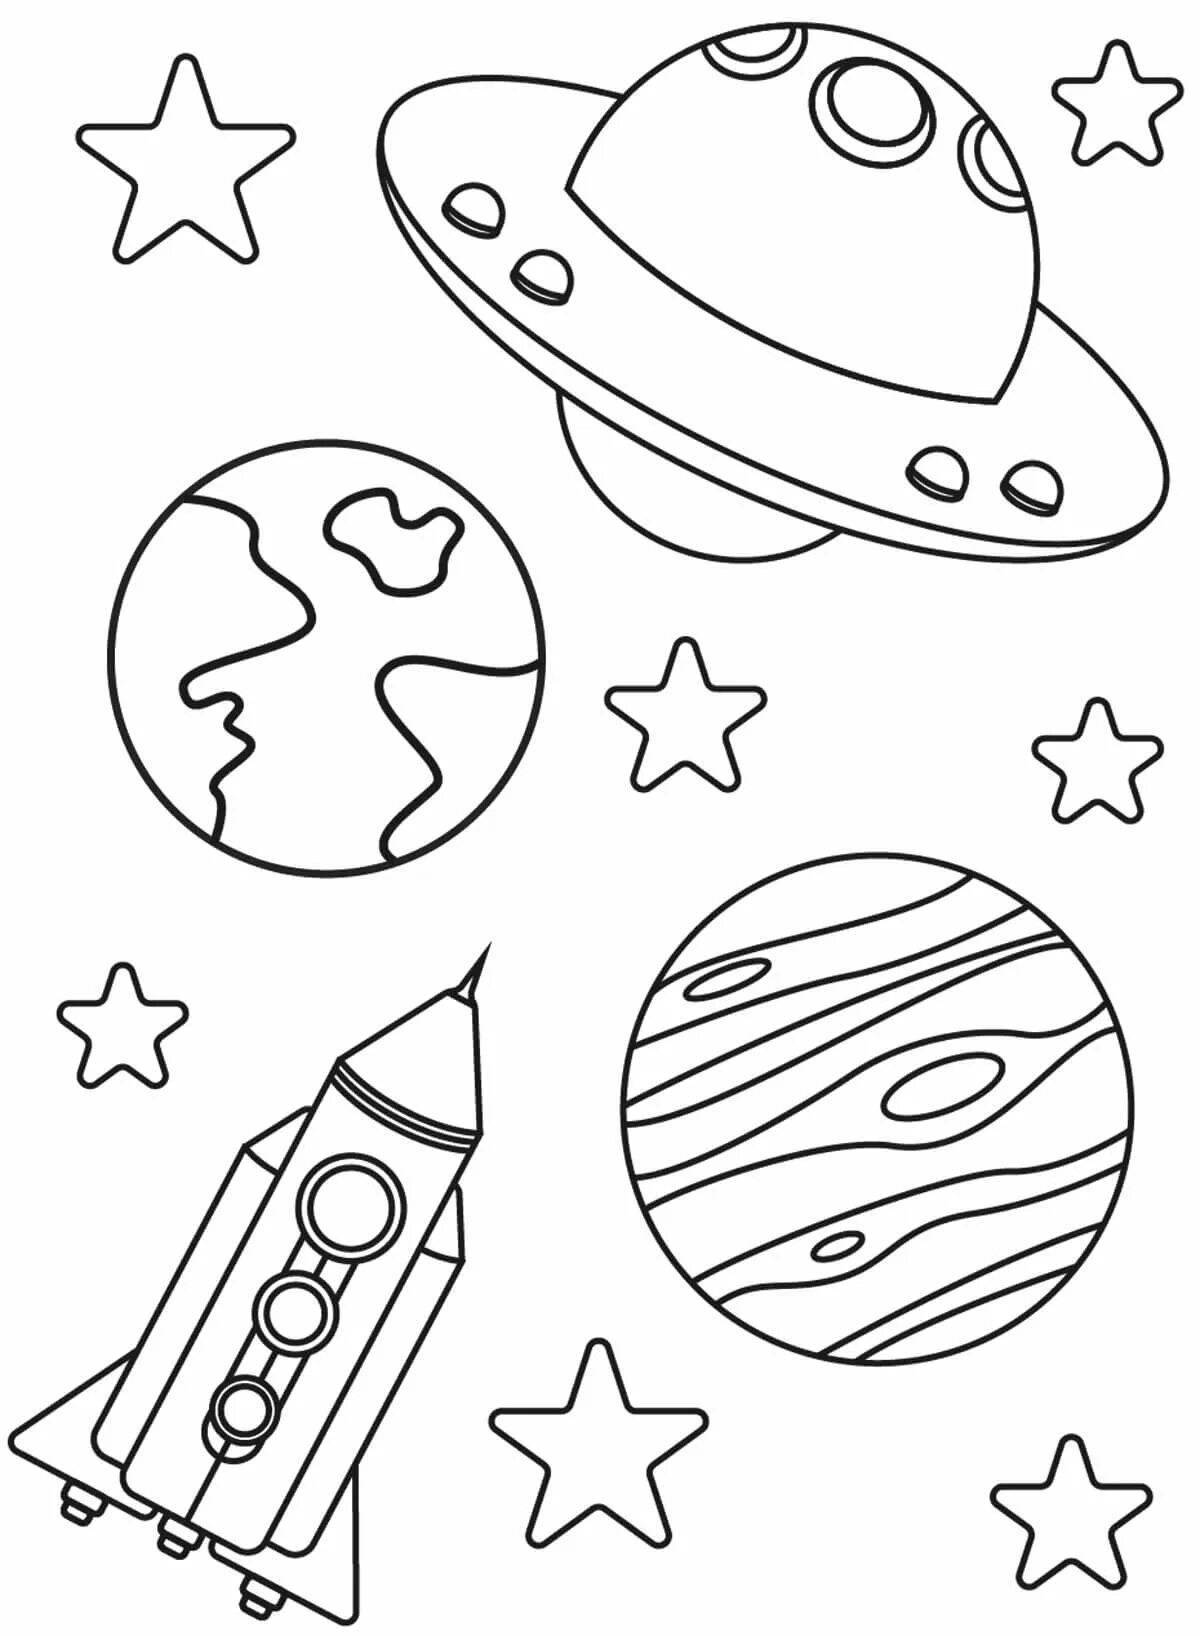 Раскраска про космос для детей 3 лет. Космос раскраска для детей. Раскраска. В космосе. Раскраска день космонавтики для детей. Раскраска для малышей. Космос.